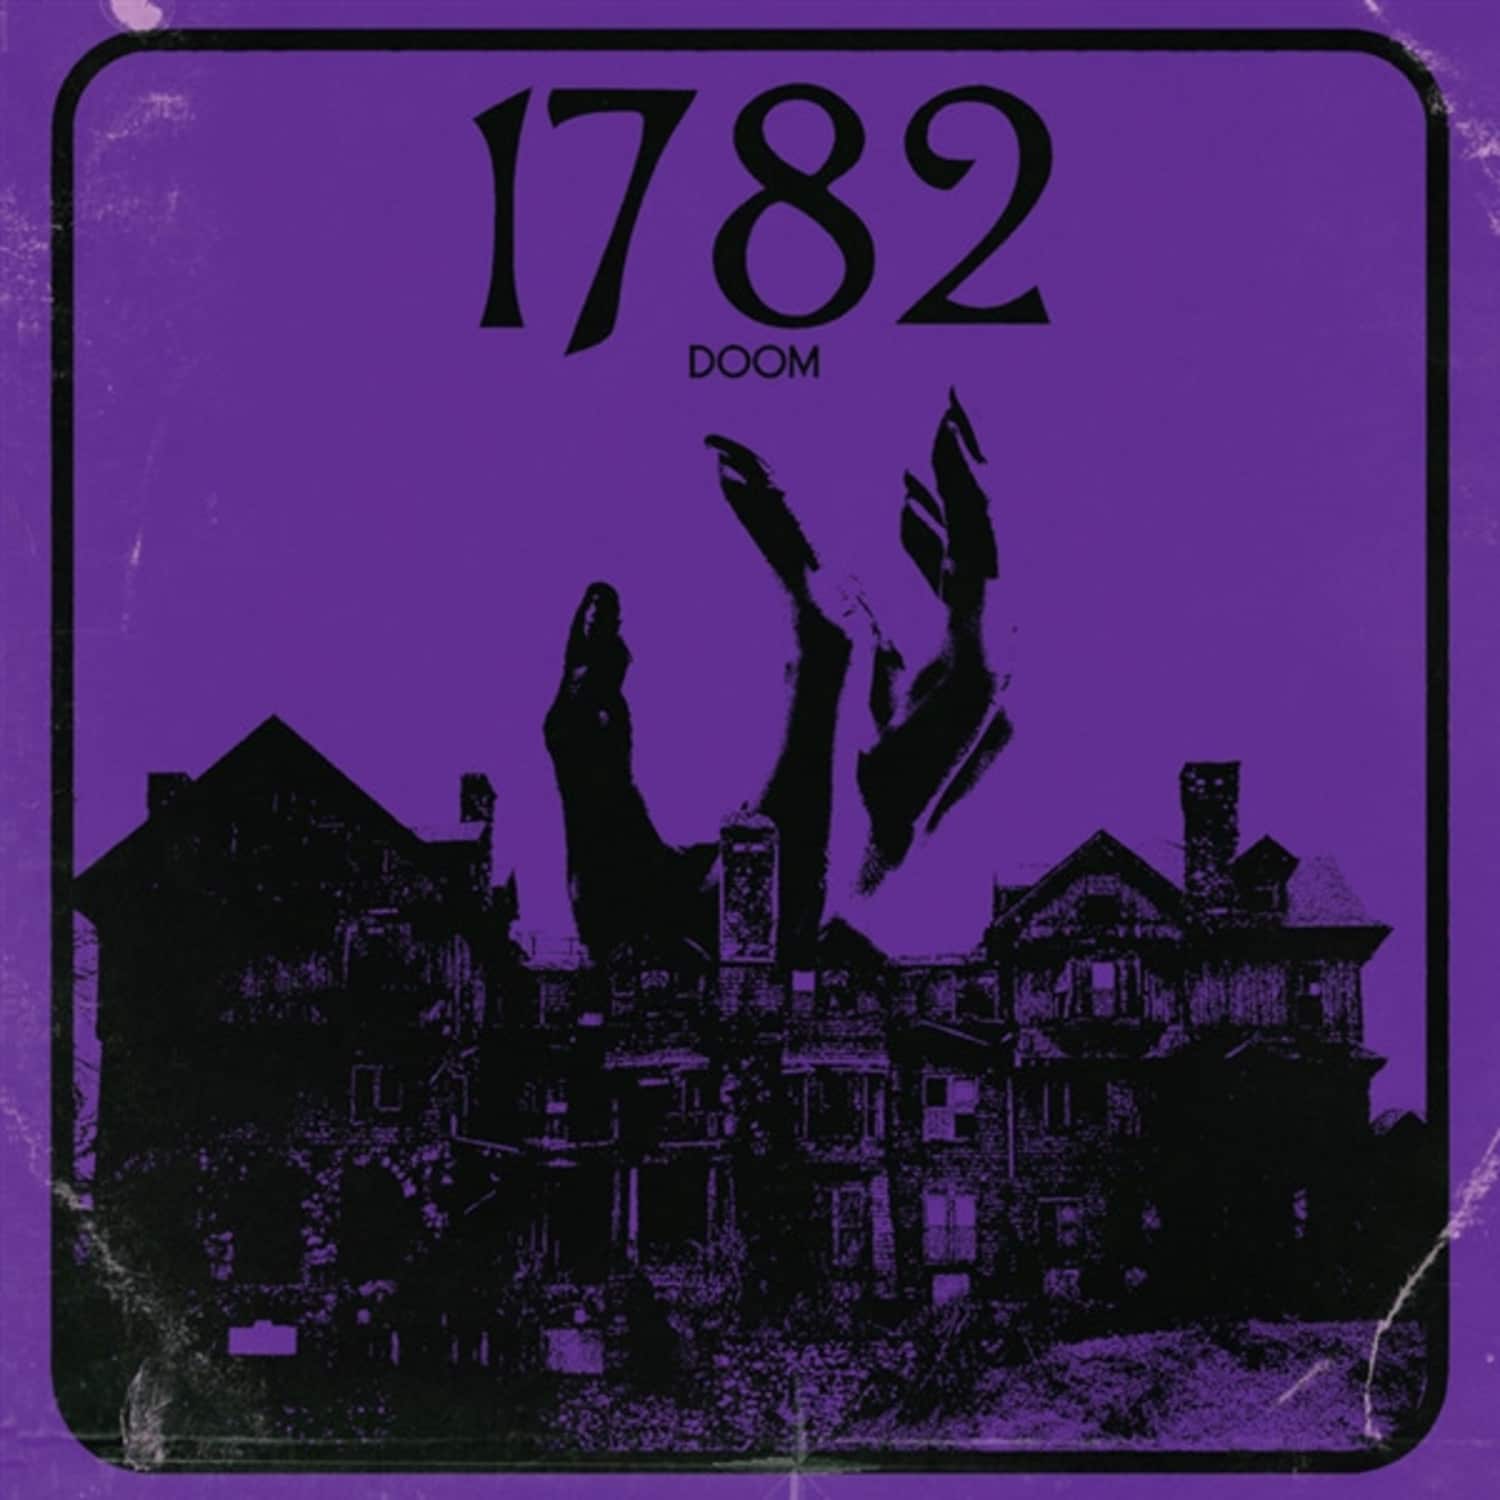 1782 - 1782 